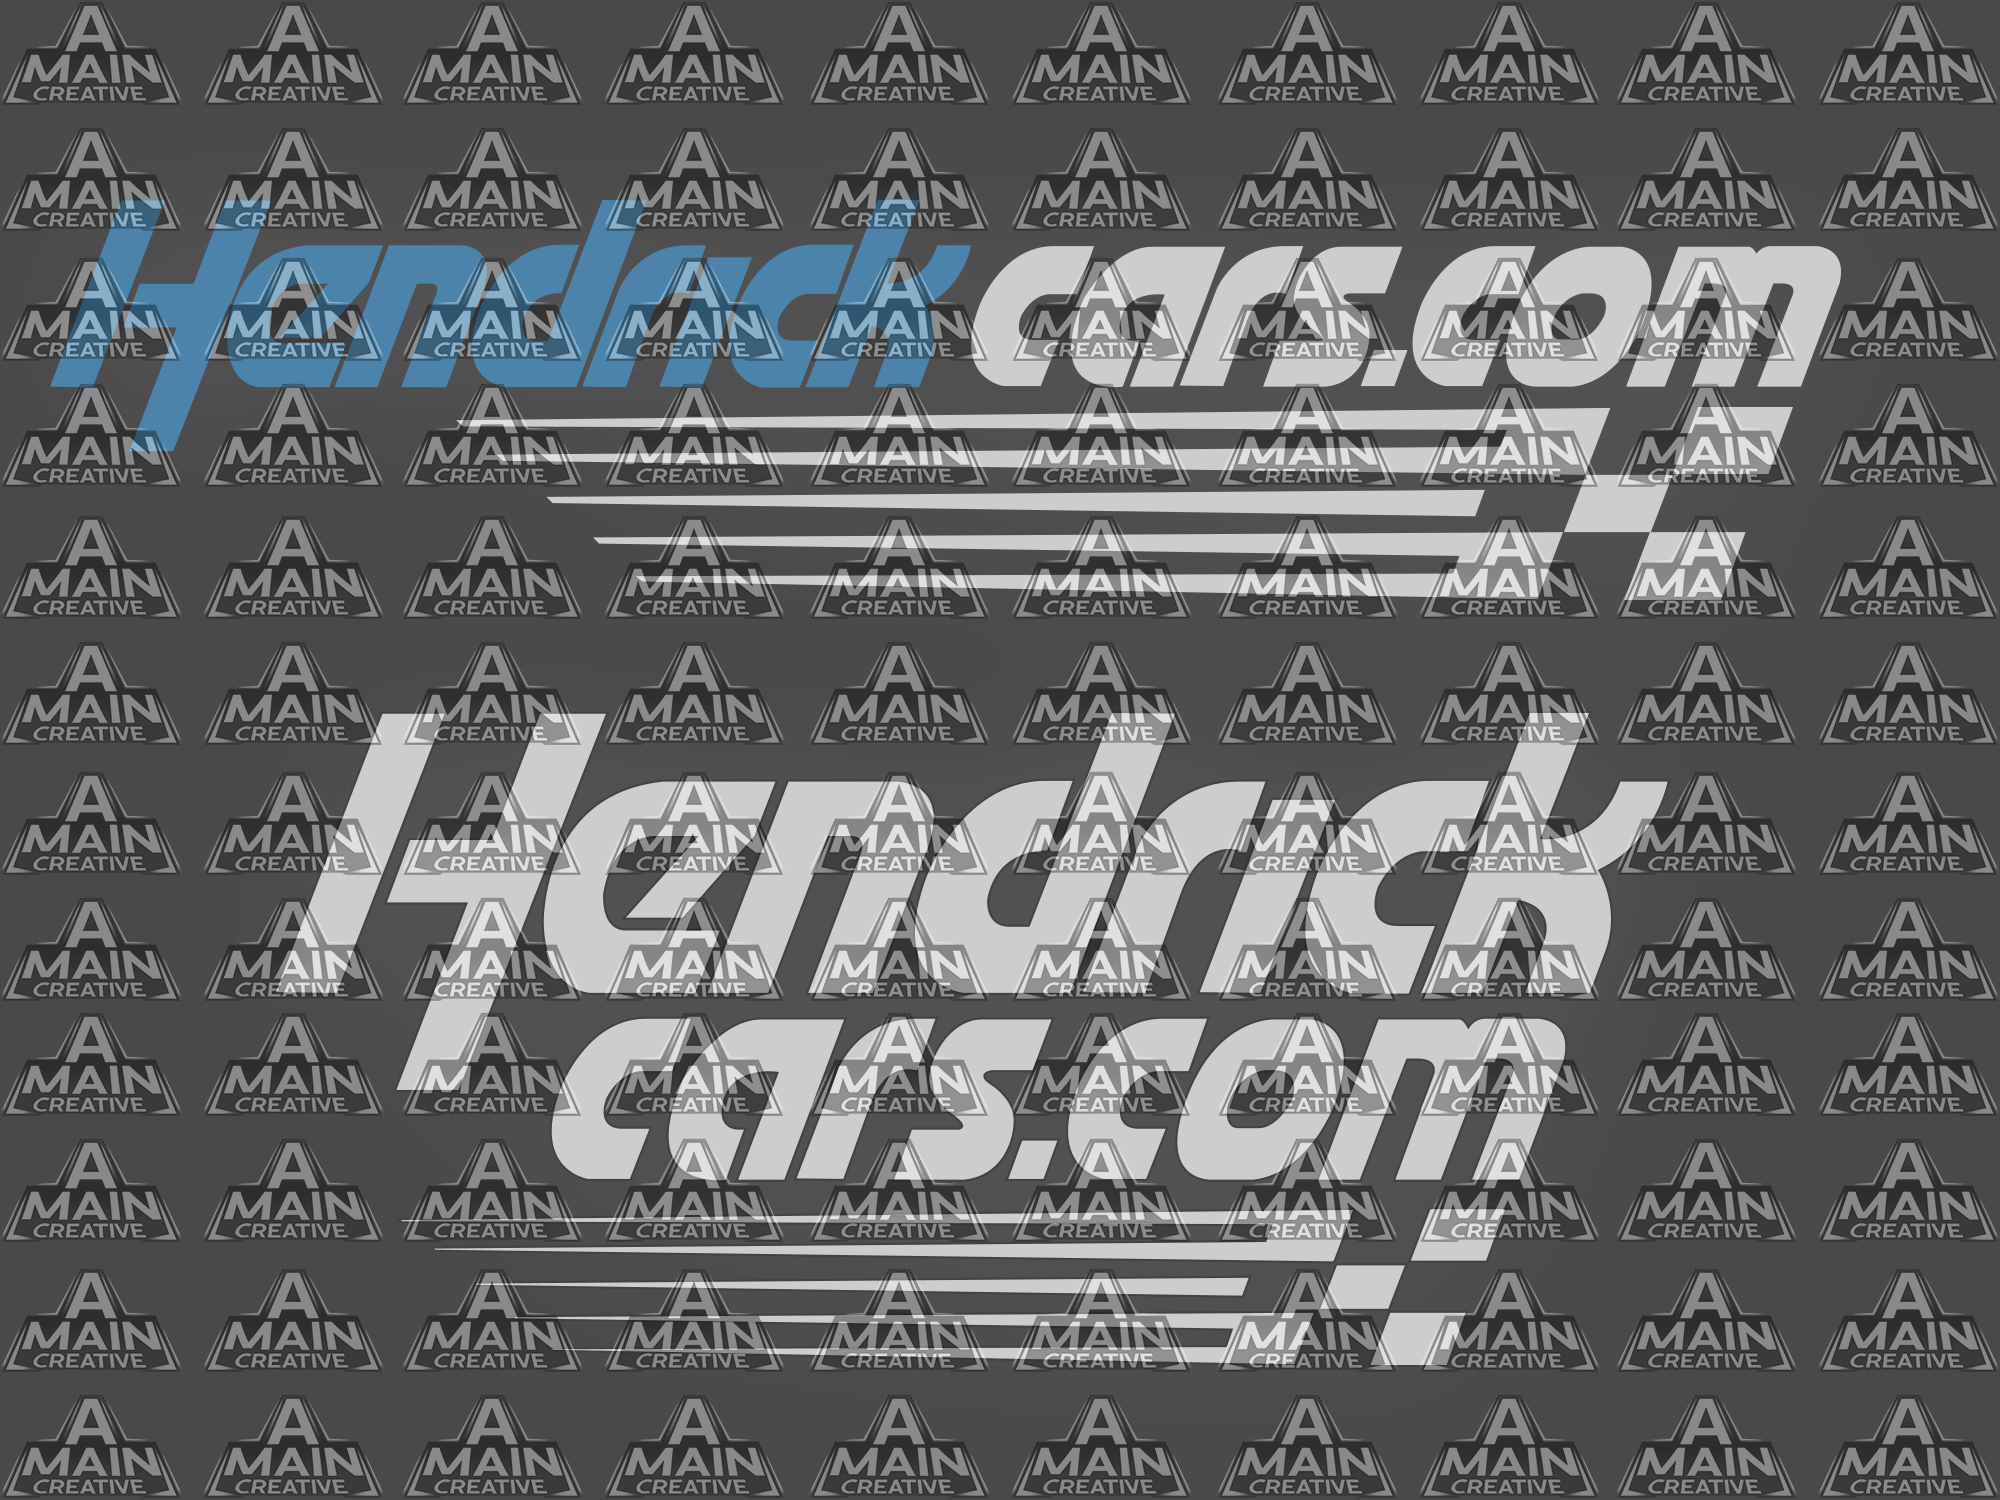 hendrickcars.png